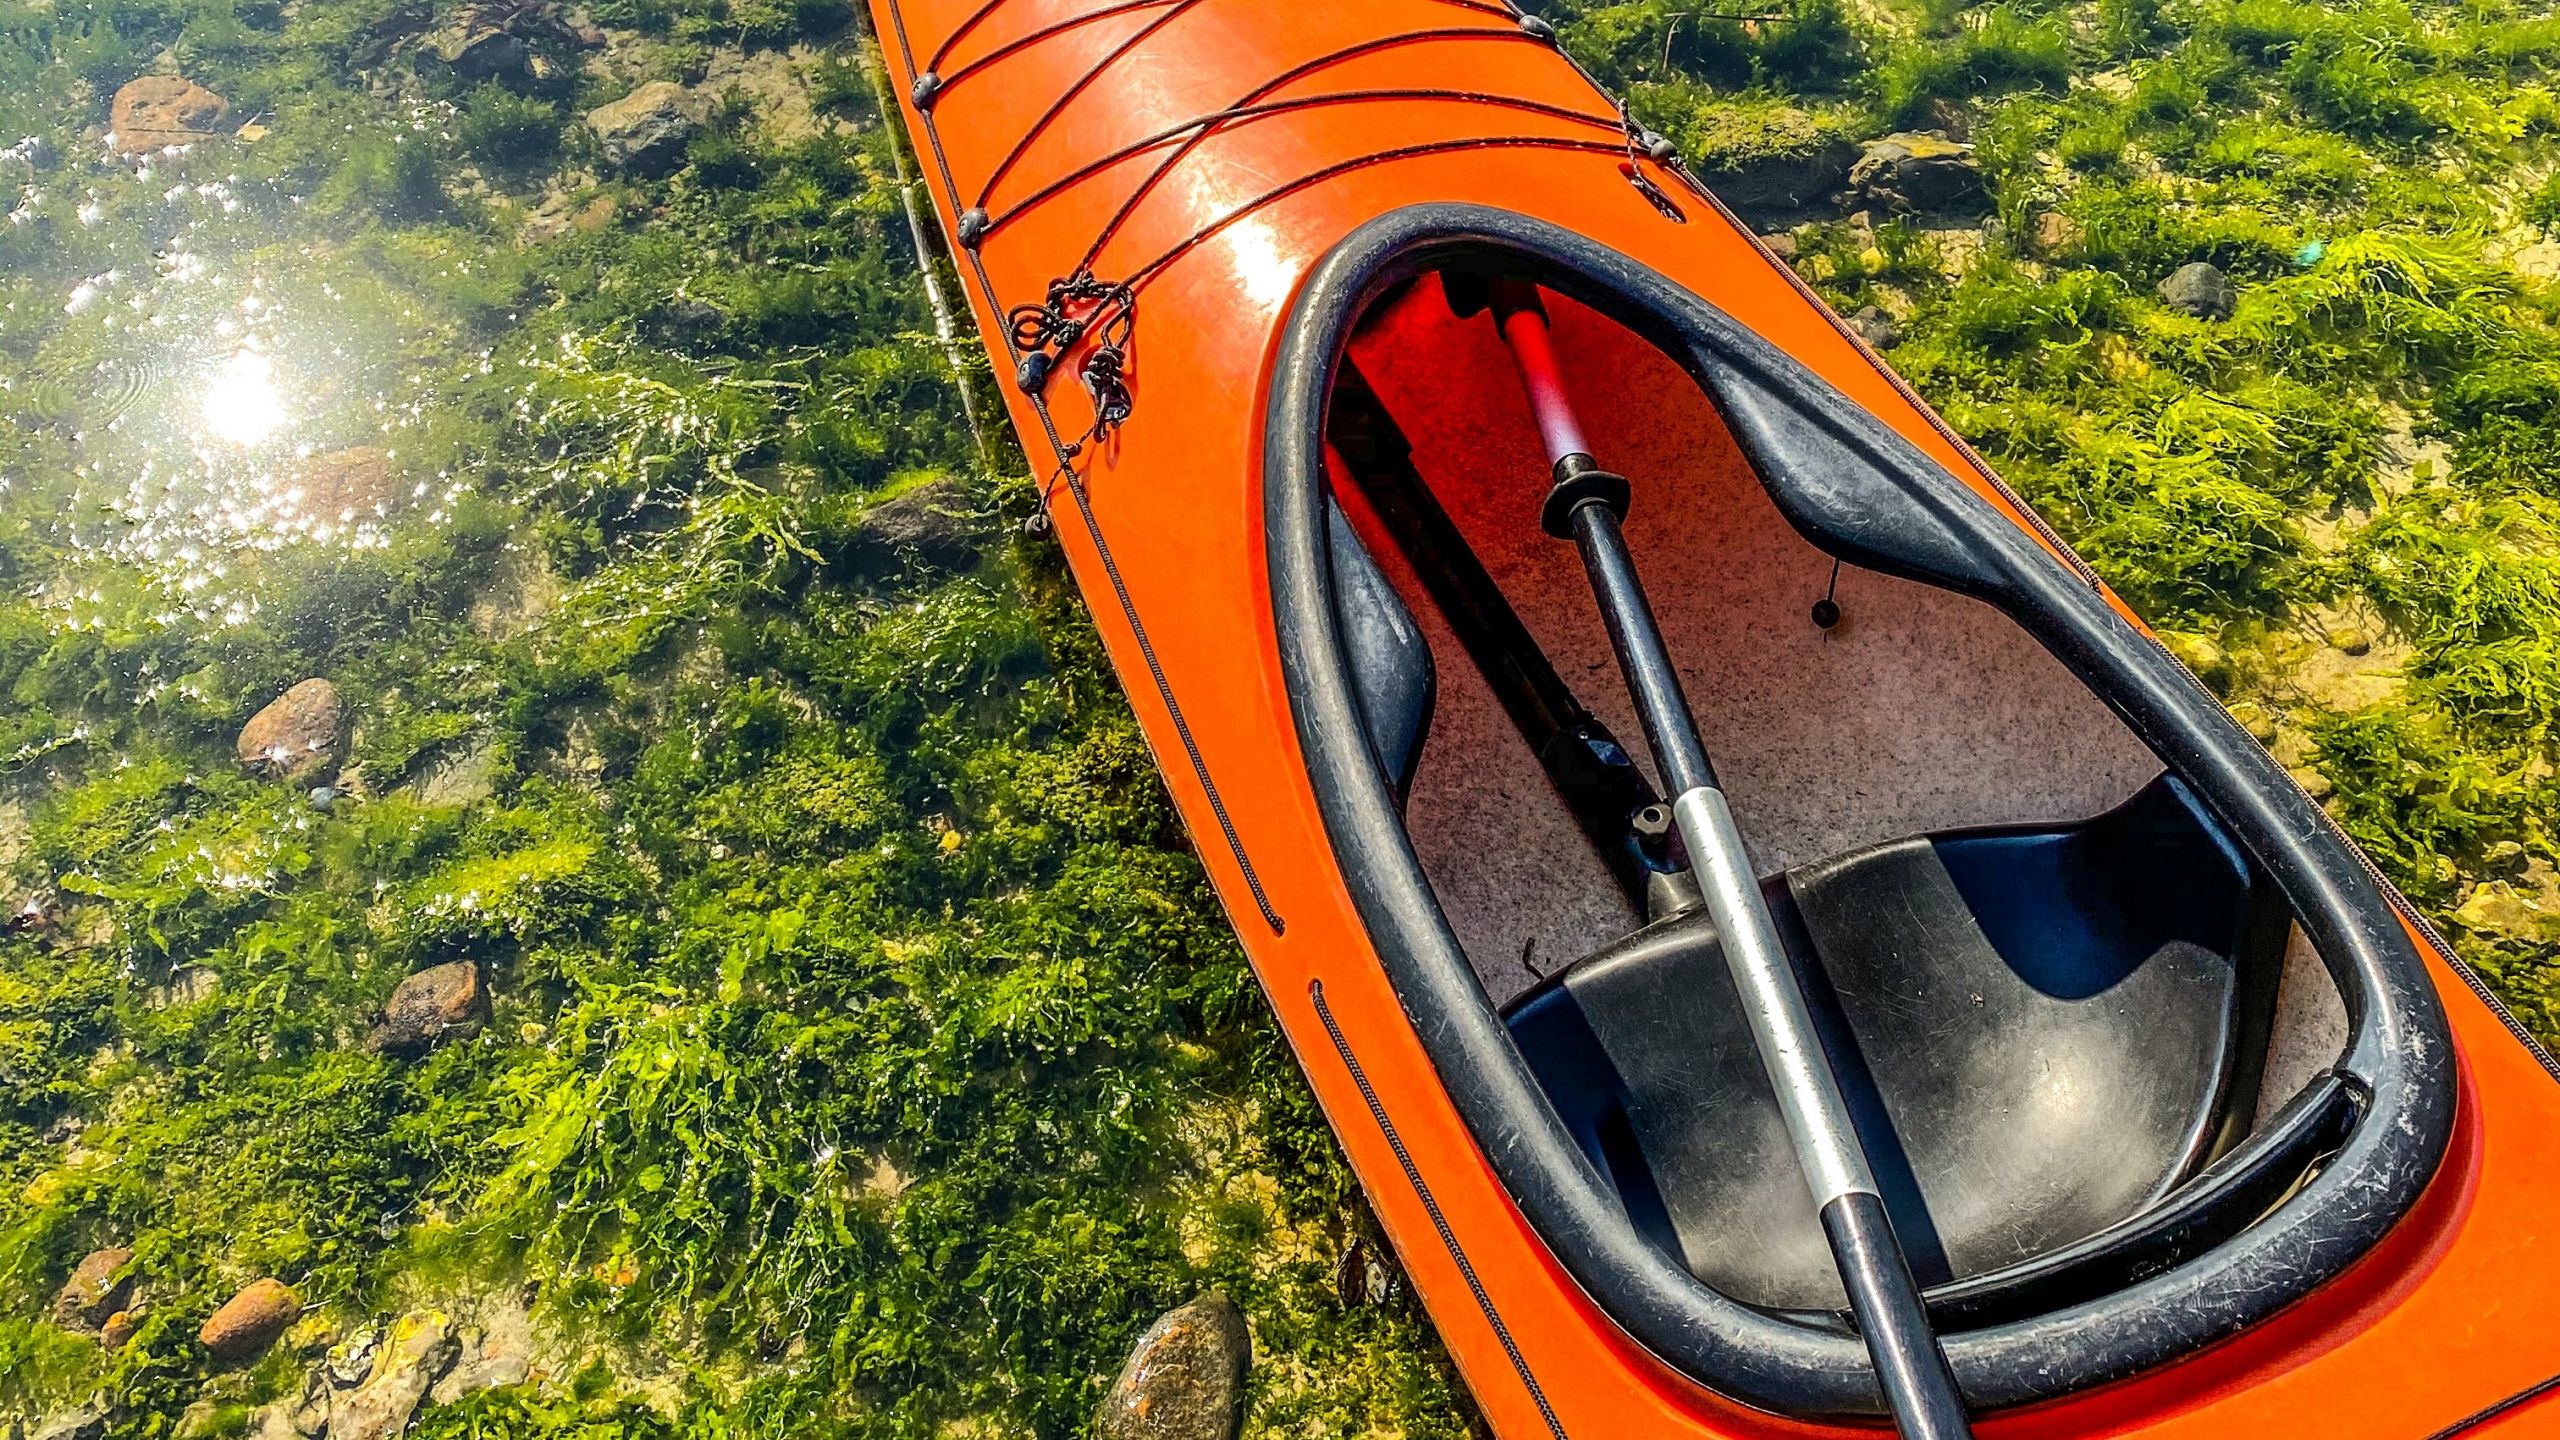 Kayak seat - how to make kayak seat more comfortable